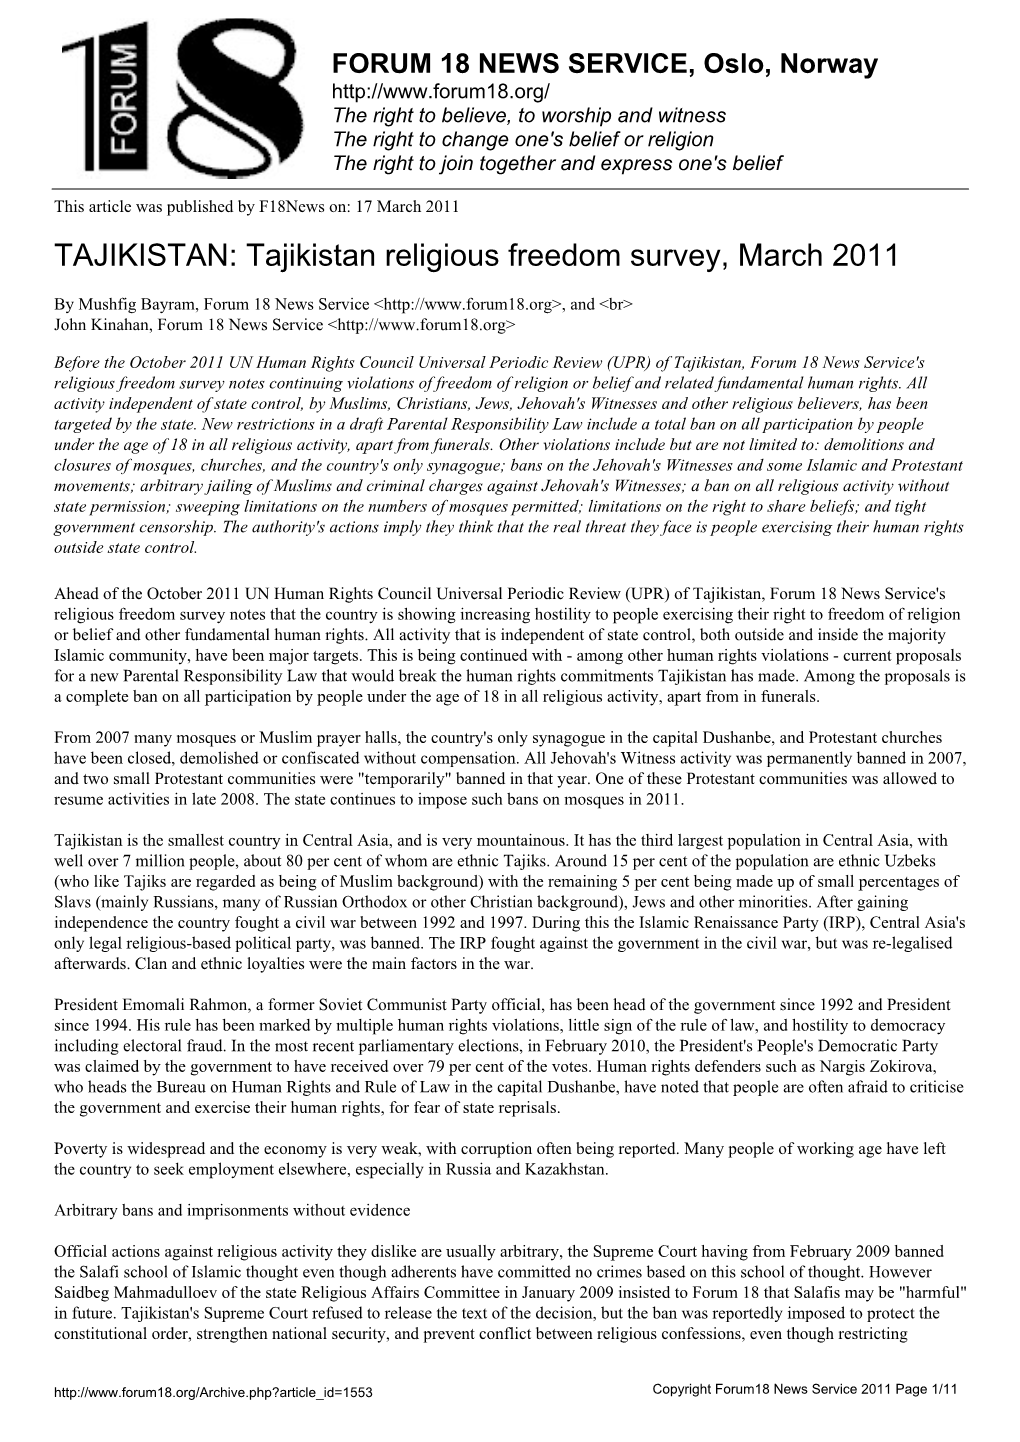 Tajikistan Religious Freedom Survey, March 2011